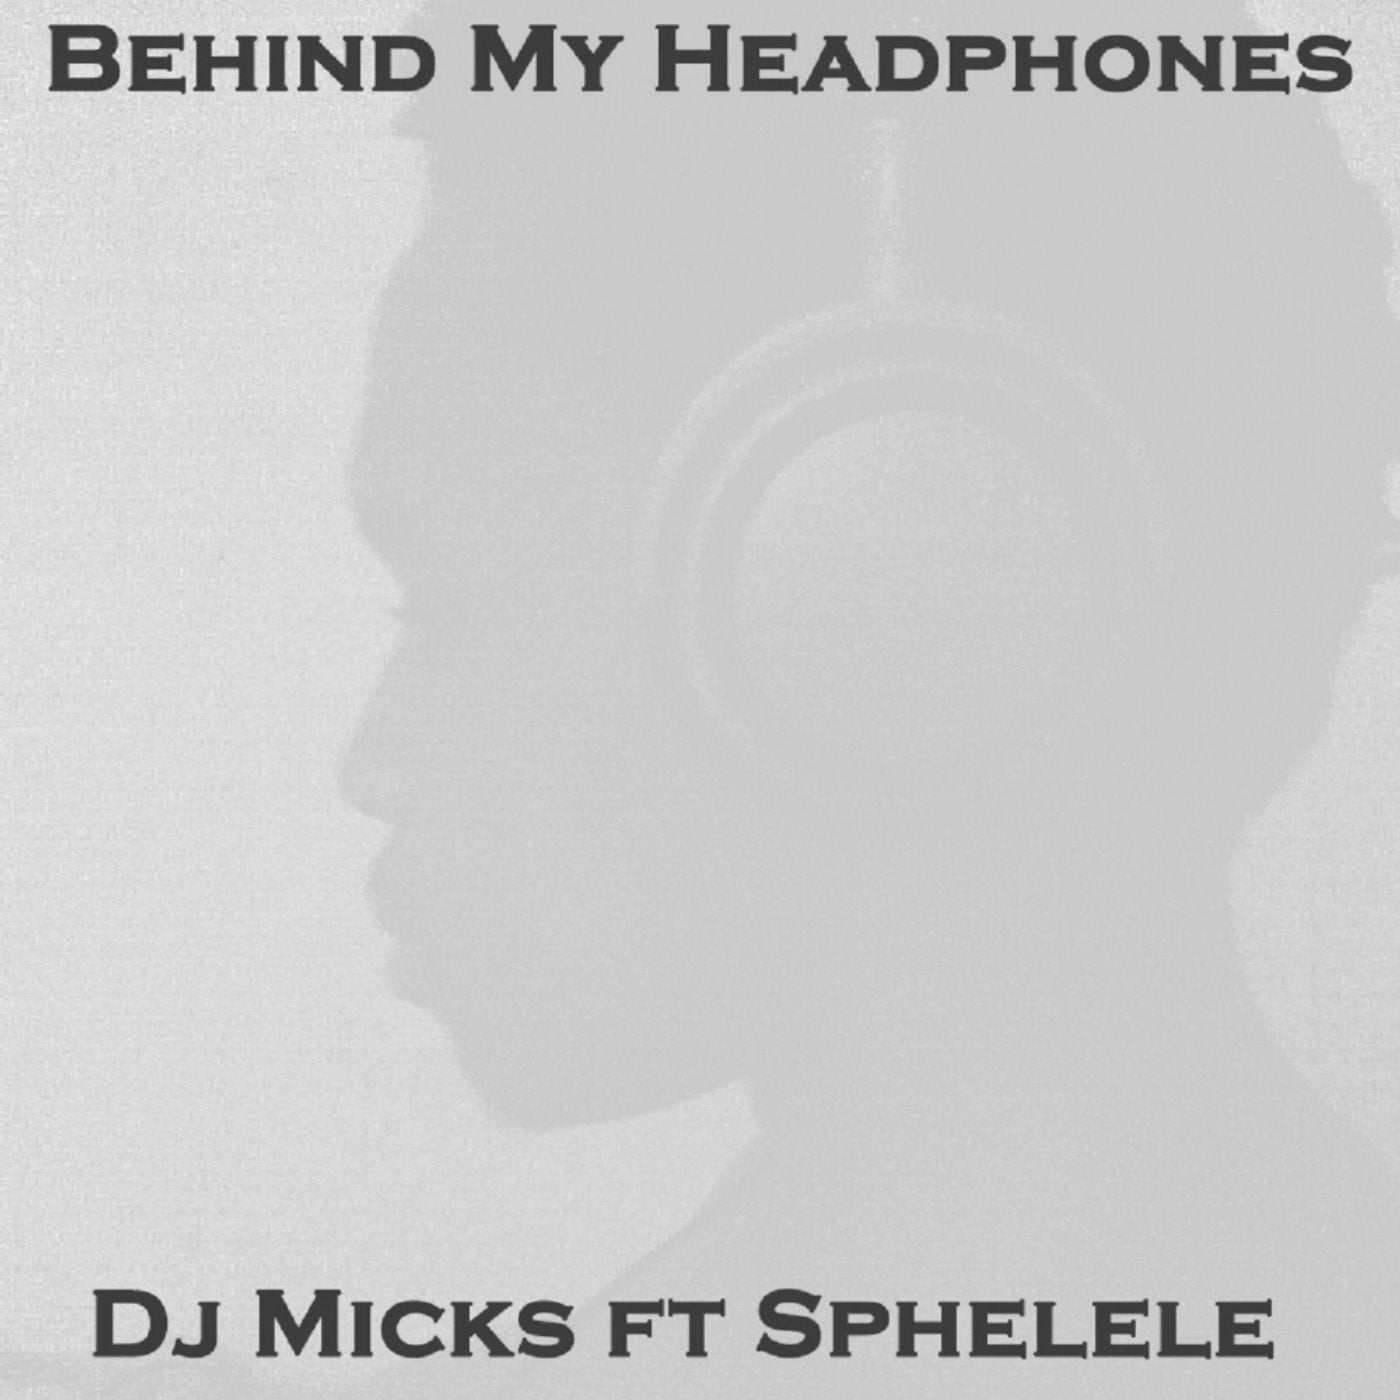 Behind My Headphones